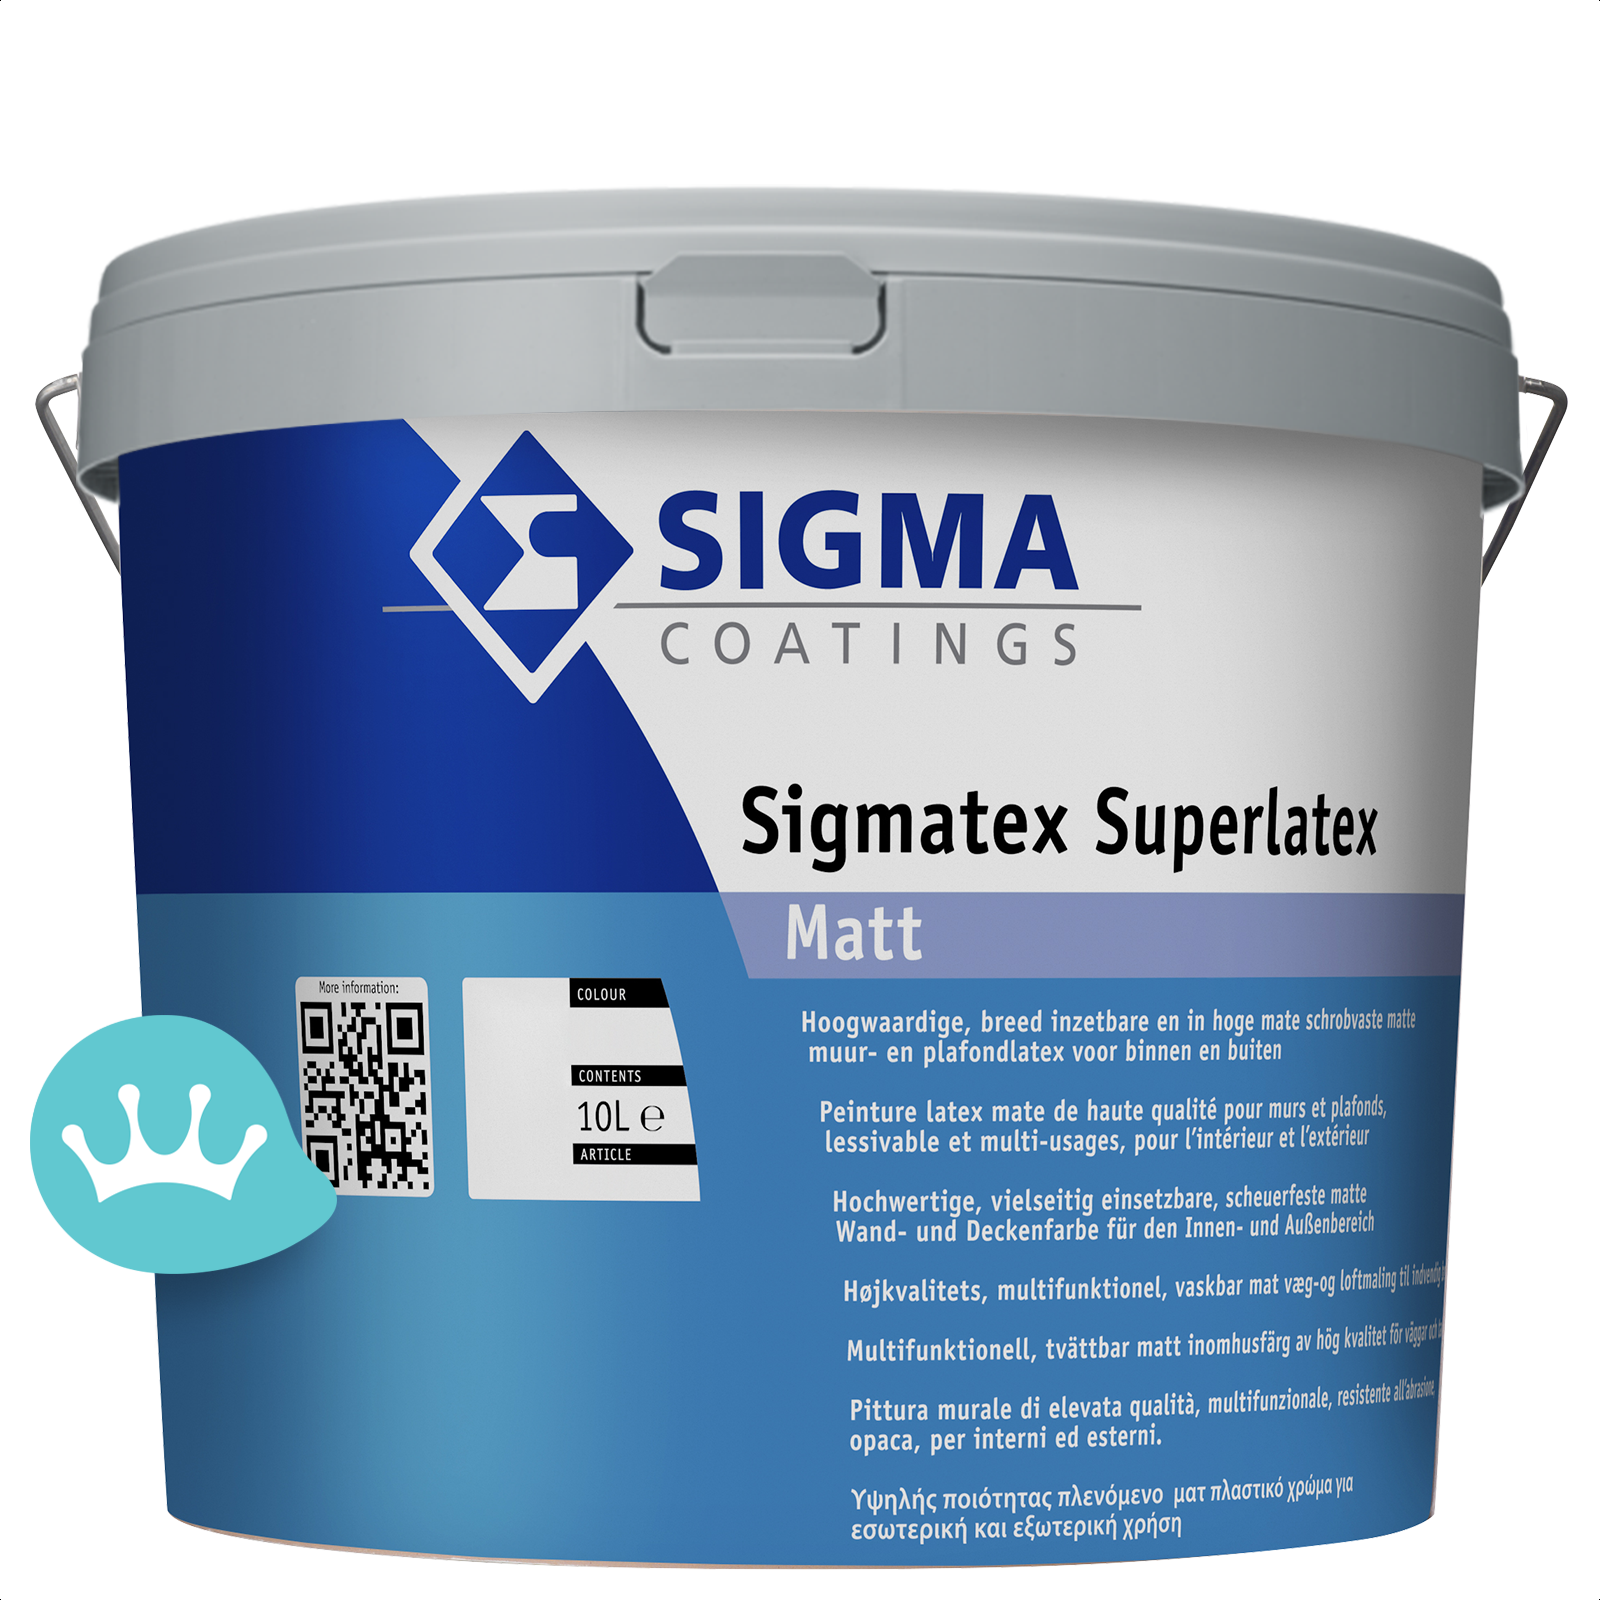 verbrand bevel kwaadheid de vrije loop geven Sigma Sigmatex Superlatex Matt - Verf.nl